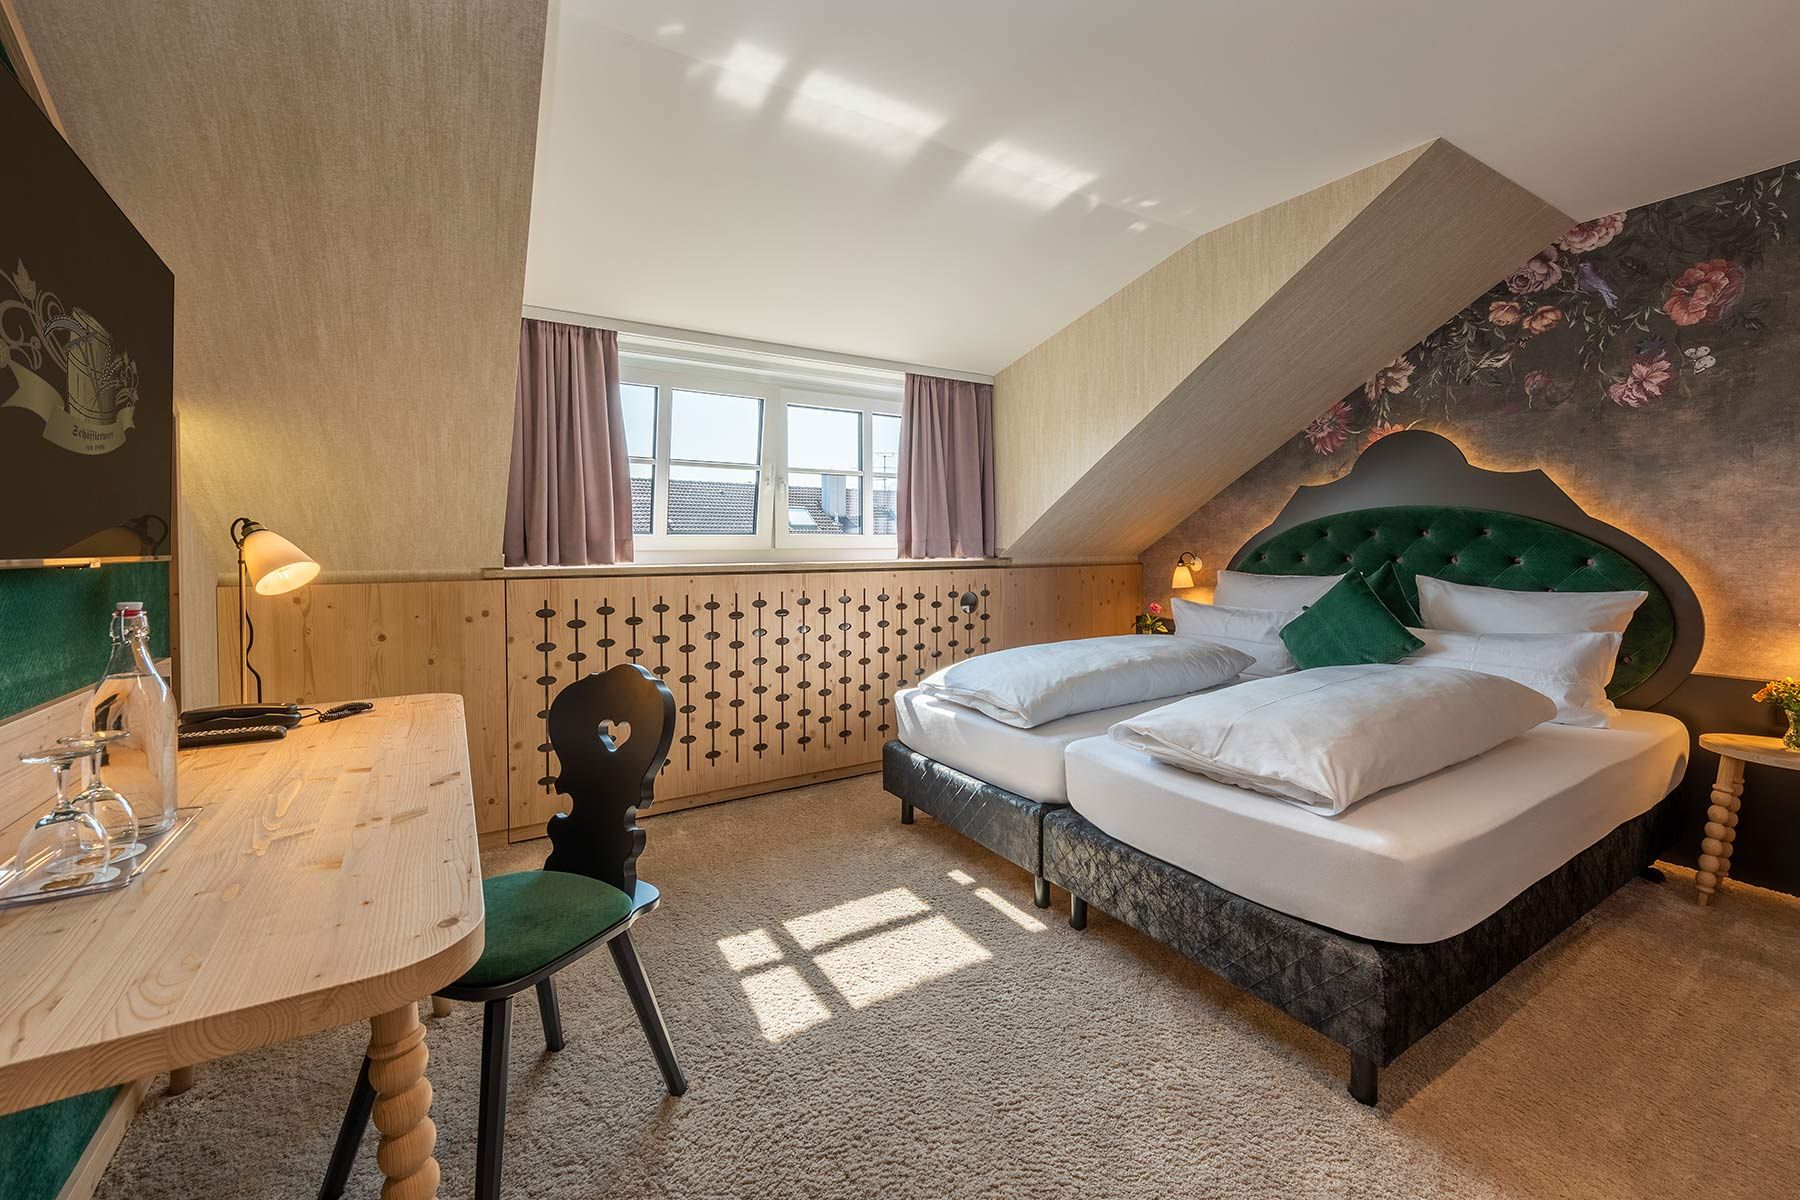 Hotelzimmer mit floraler Tapete, grünen Akzenten und Holzverkleidungen im Hotel Schaefflerwirt